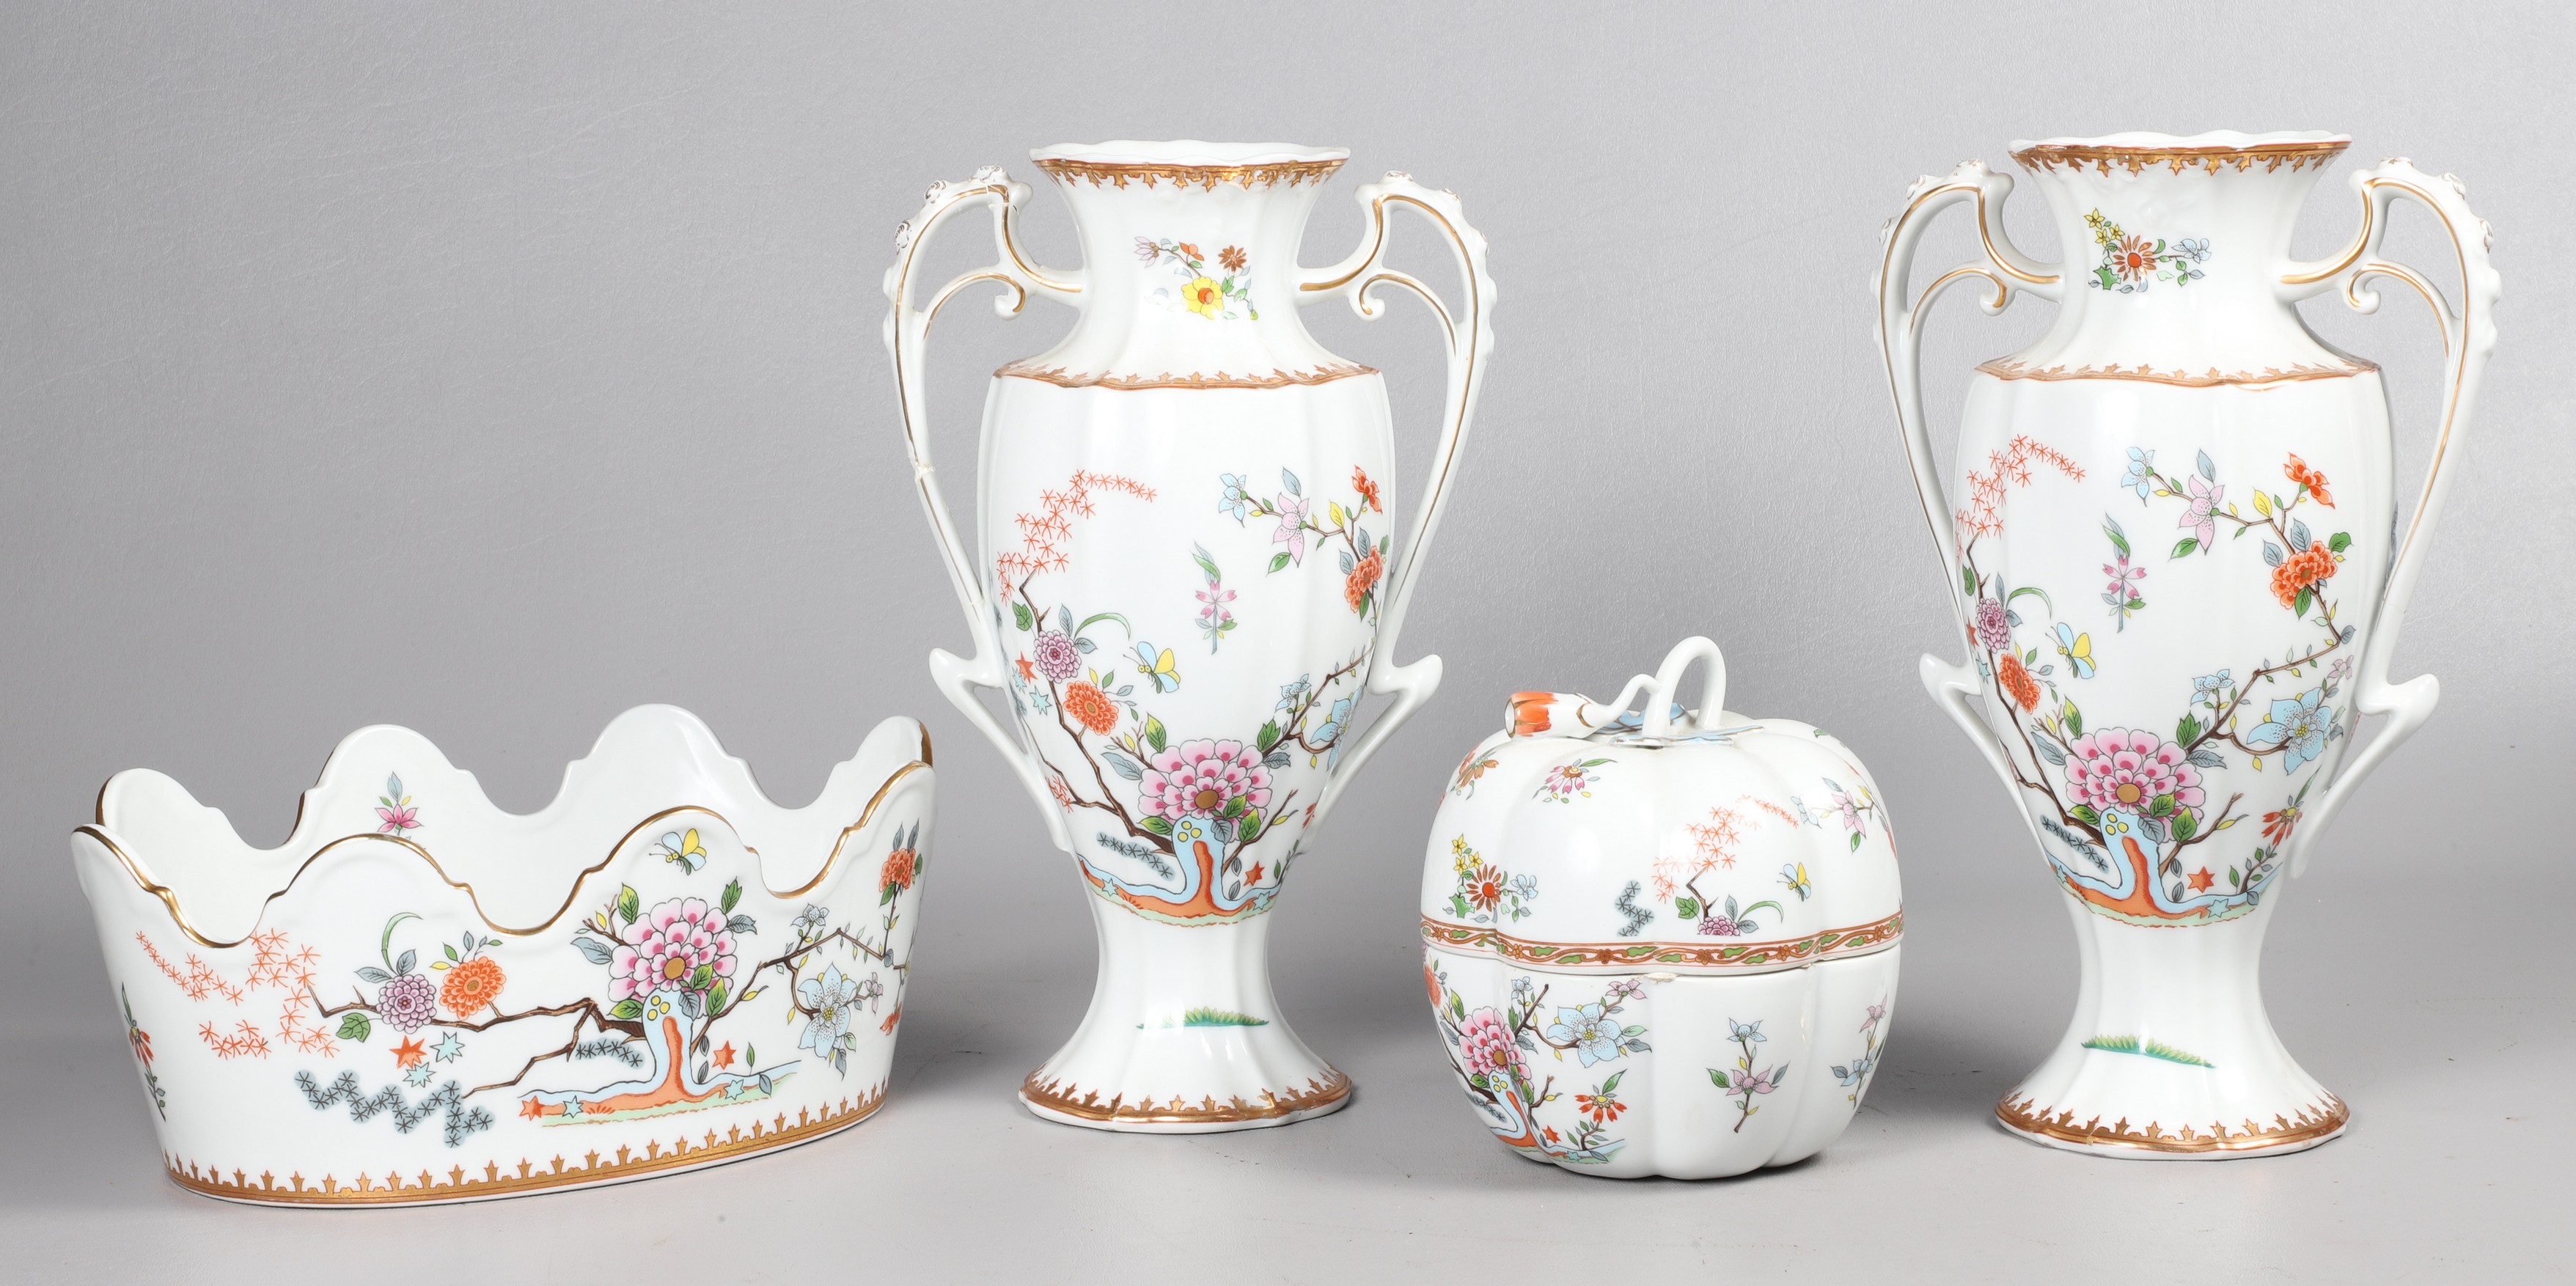  4 Floral Porcelain Vases Cachepot 2e07c3